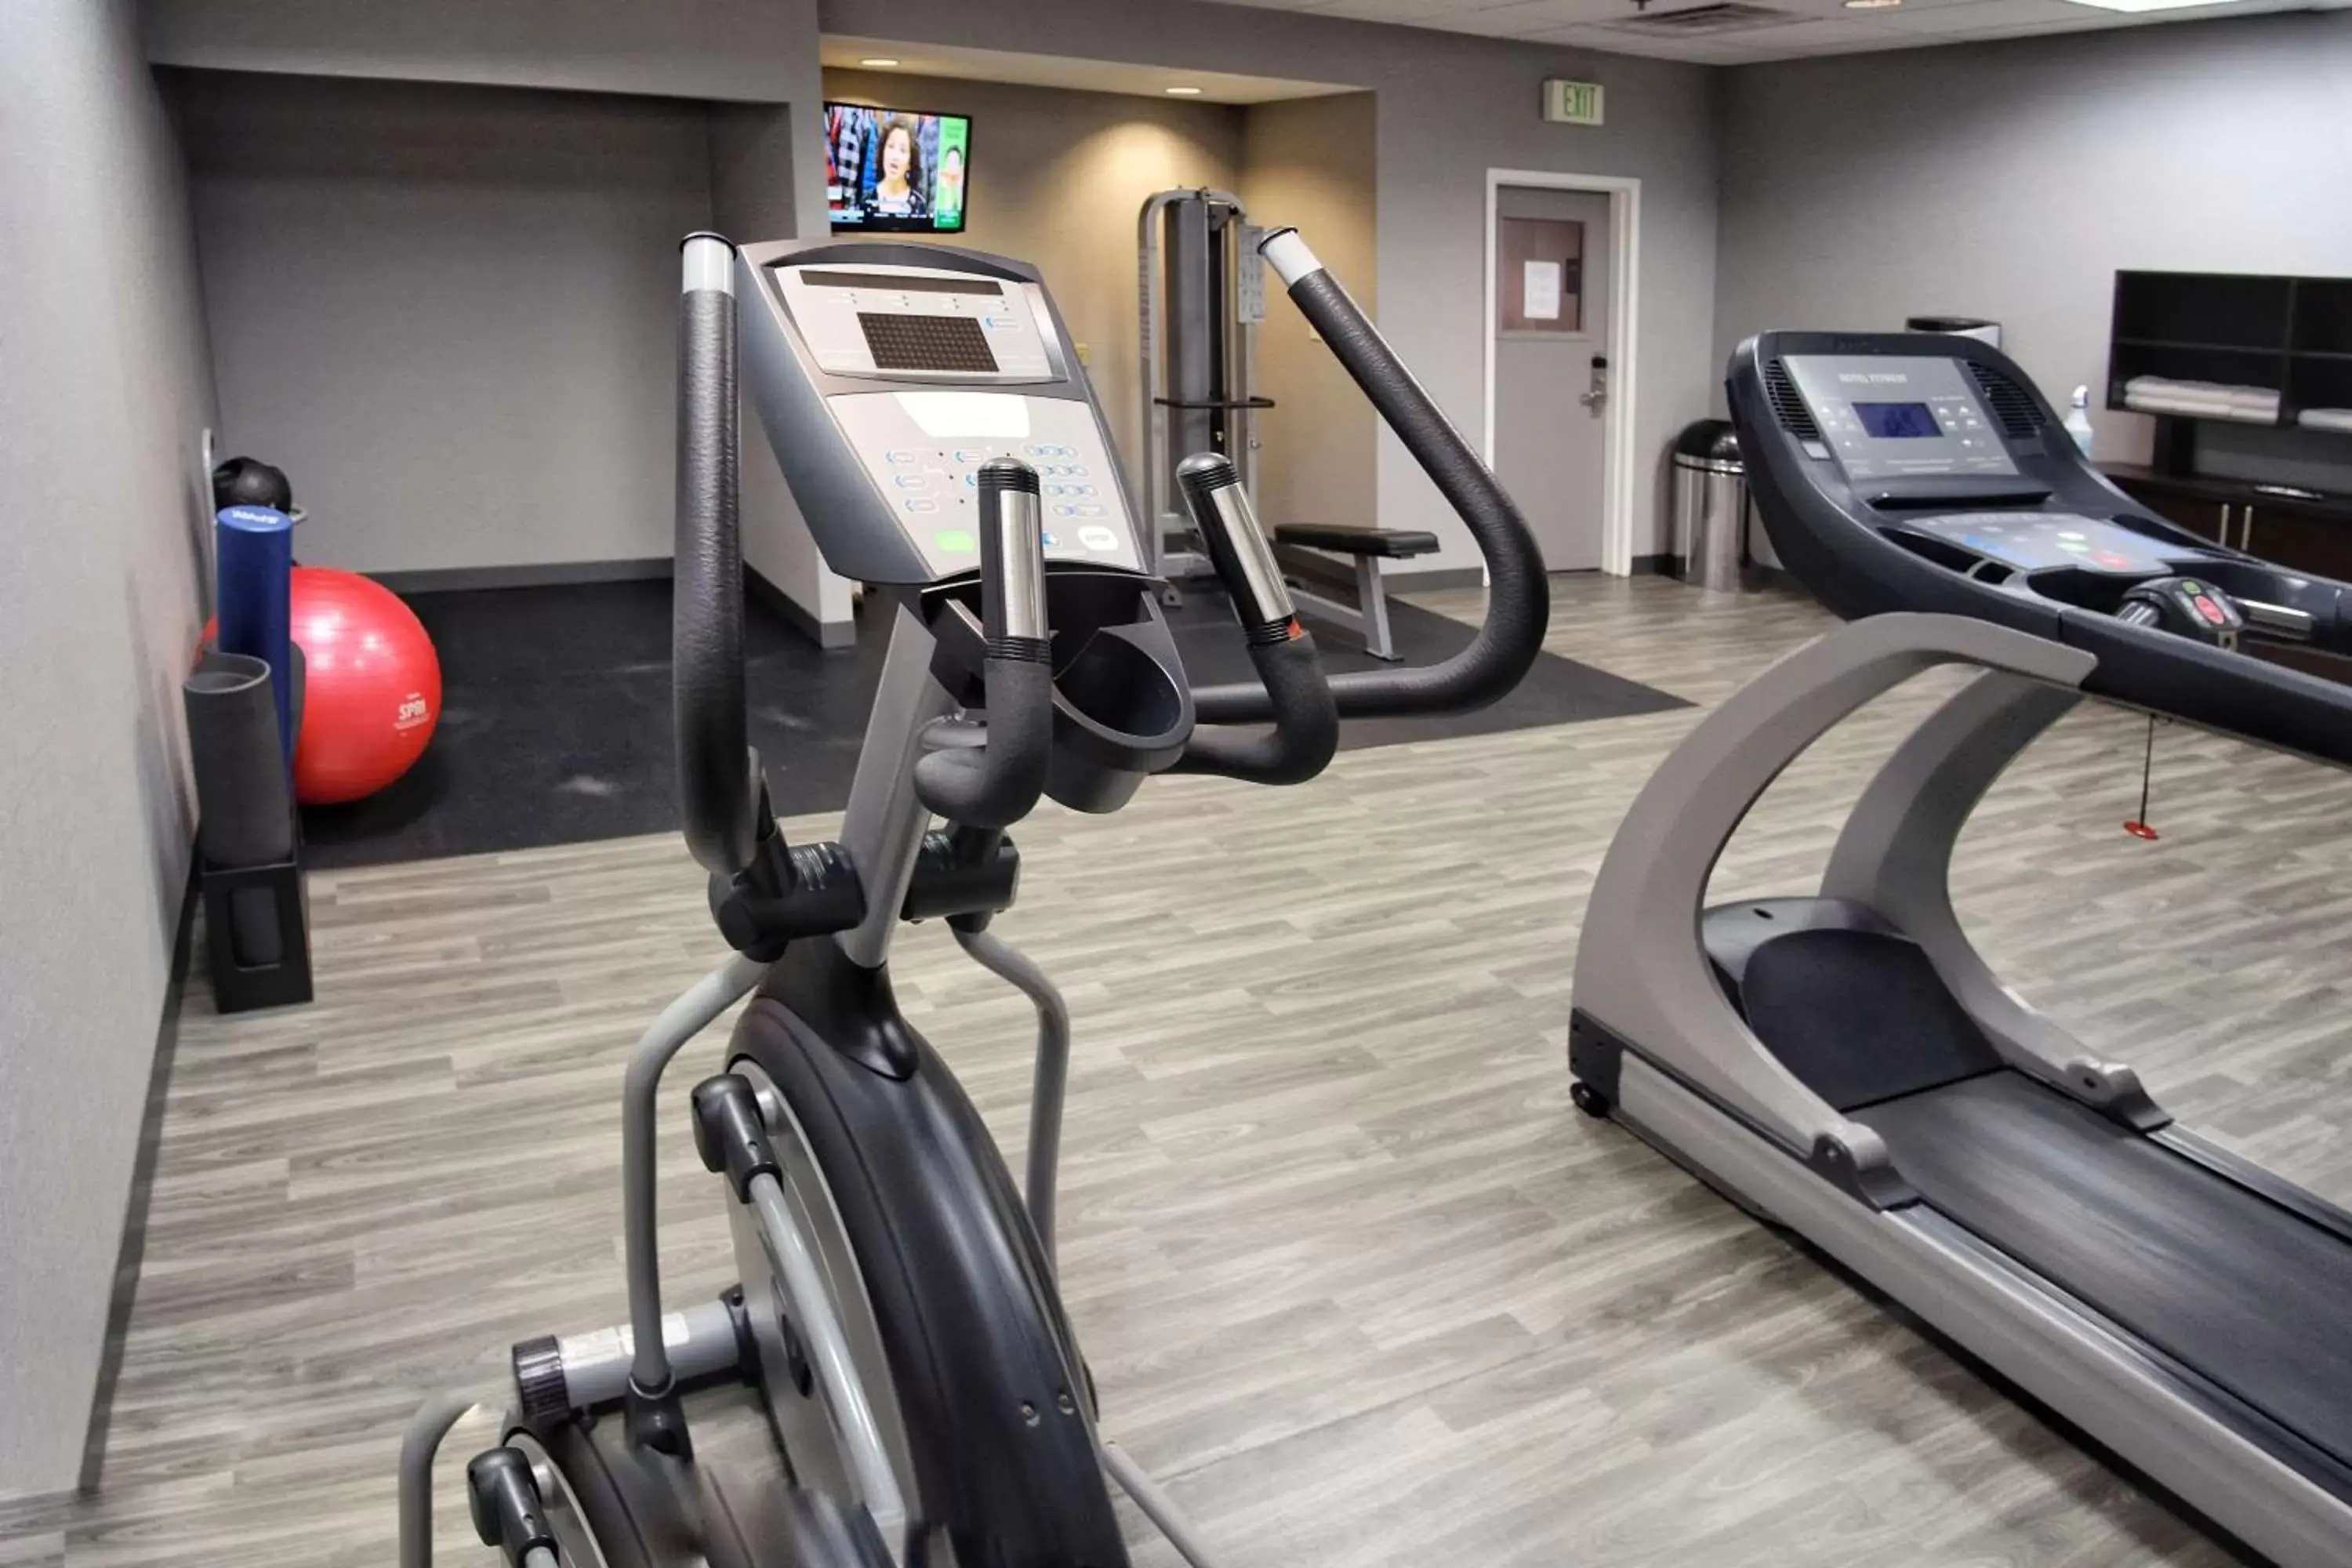 Fitness centre/facilities, Fitness Center/Facilities in Hampton Inn Oklahoma City/Yukon